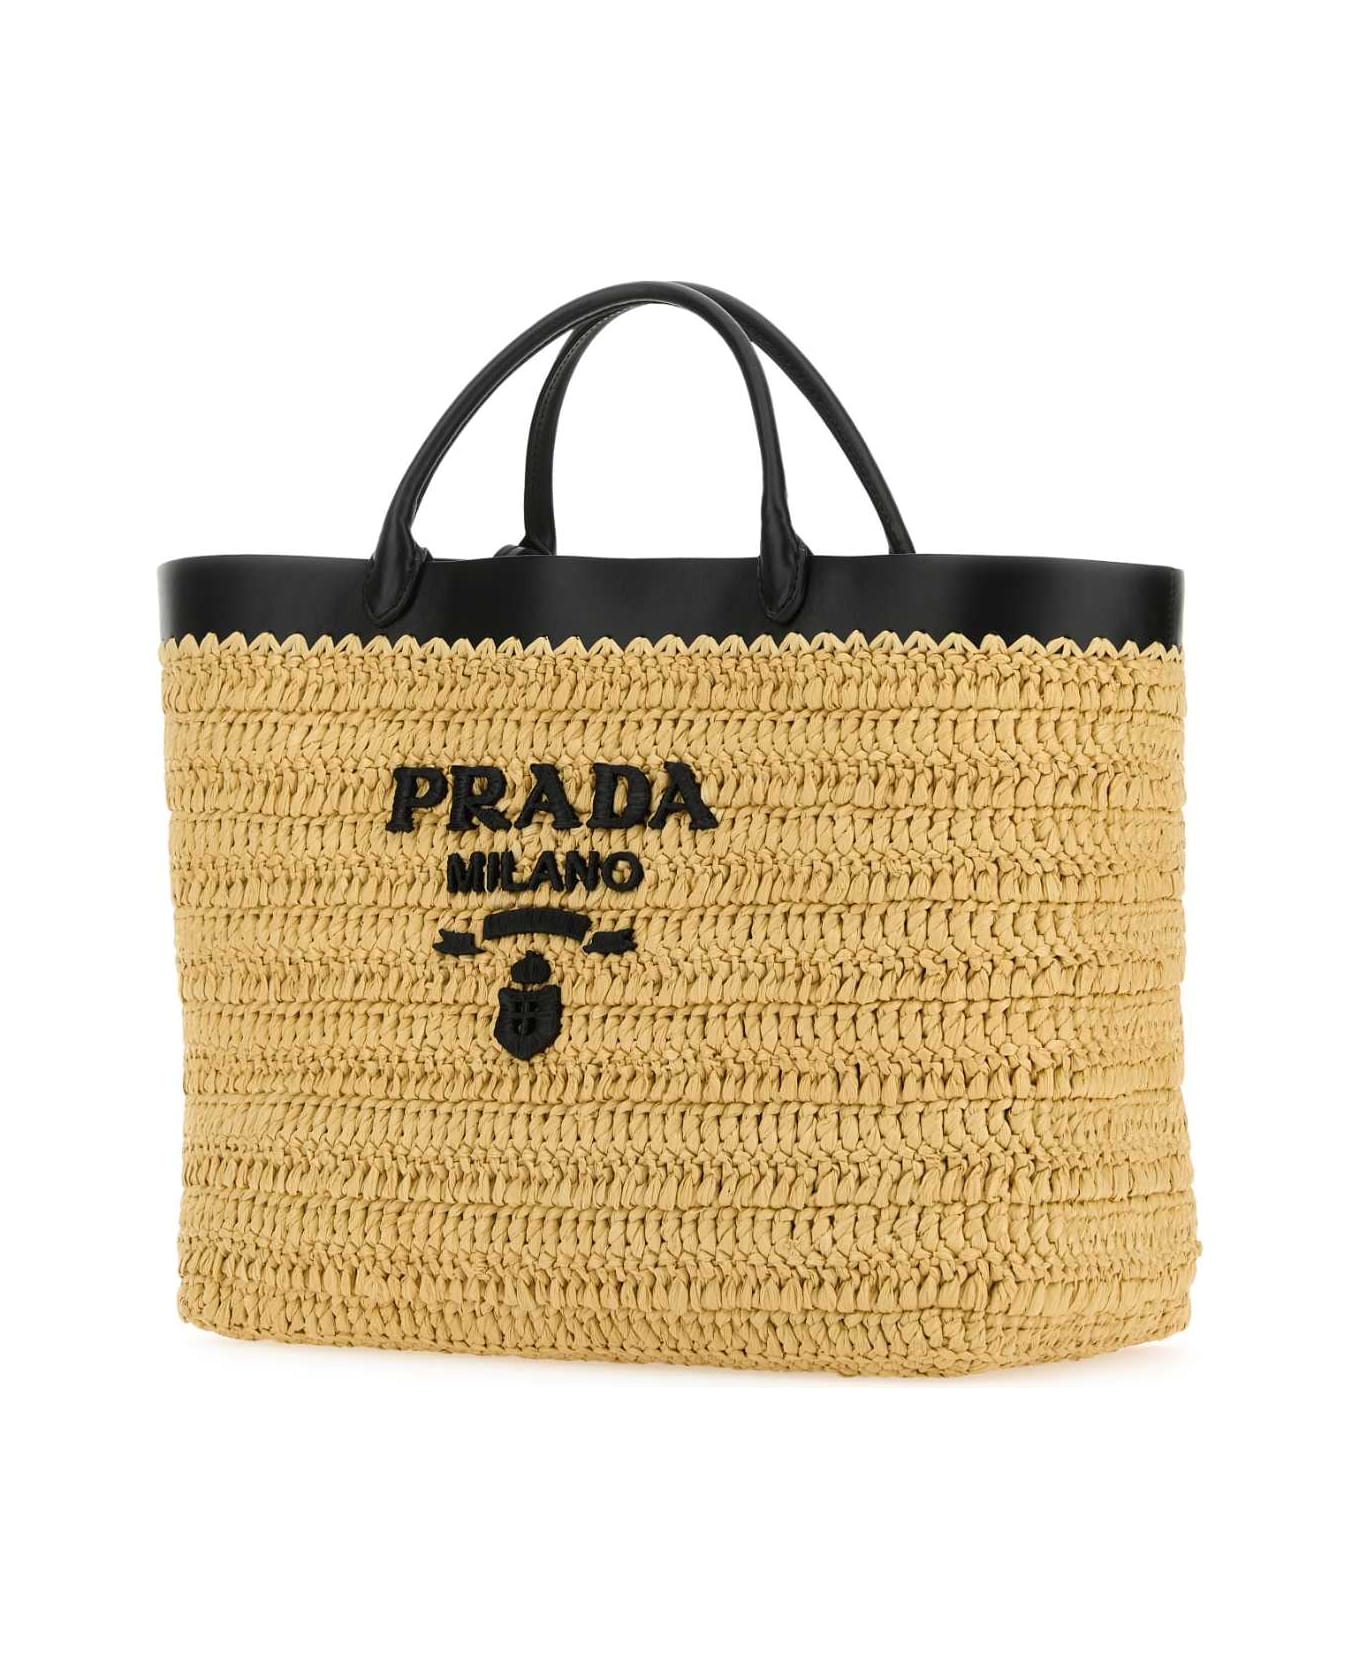 Prada Raffia Shopping Bag - NATURALENERO トートバッグ